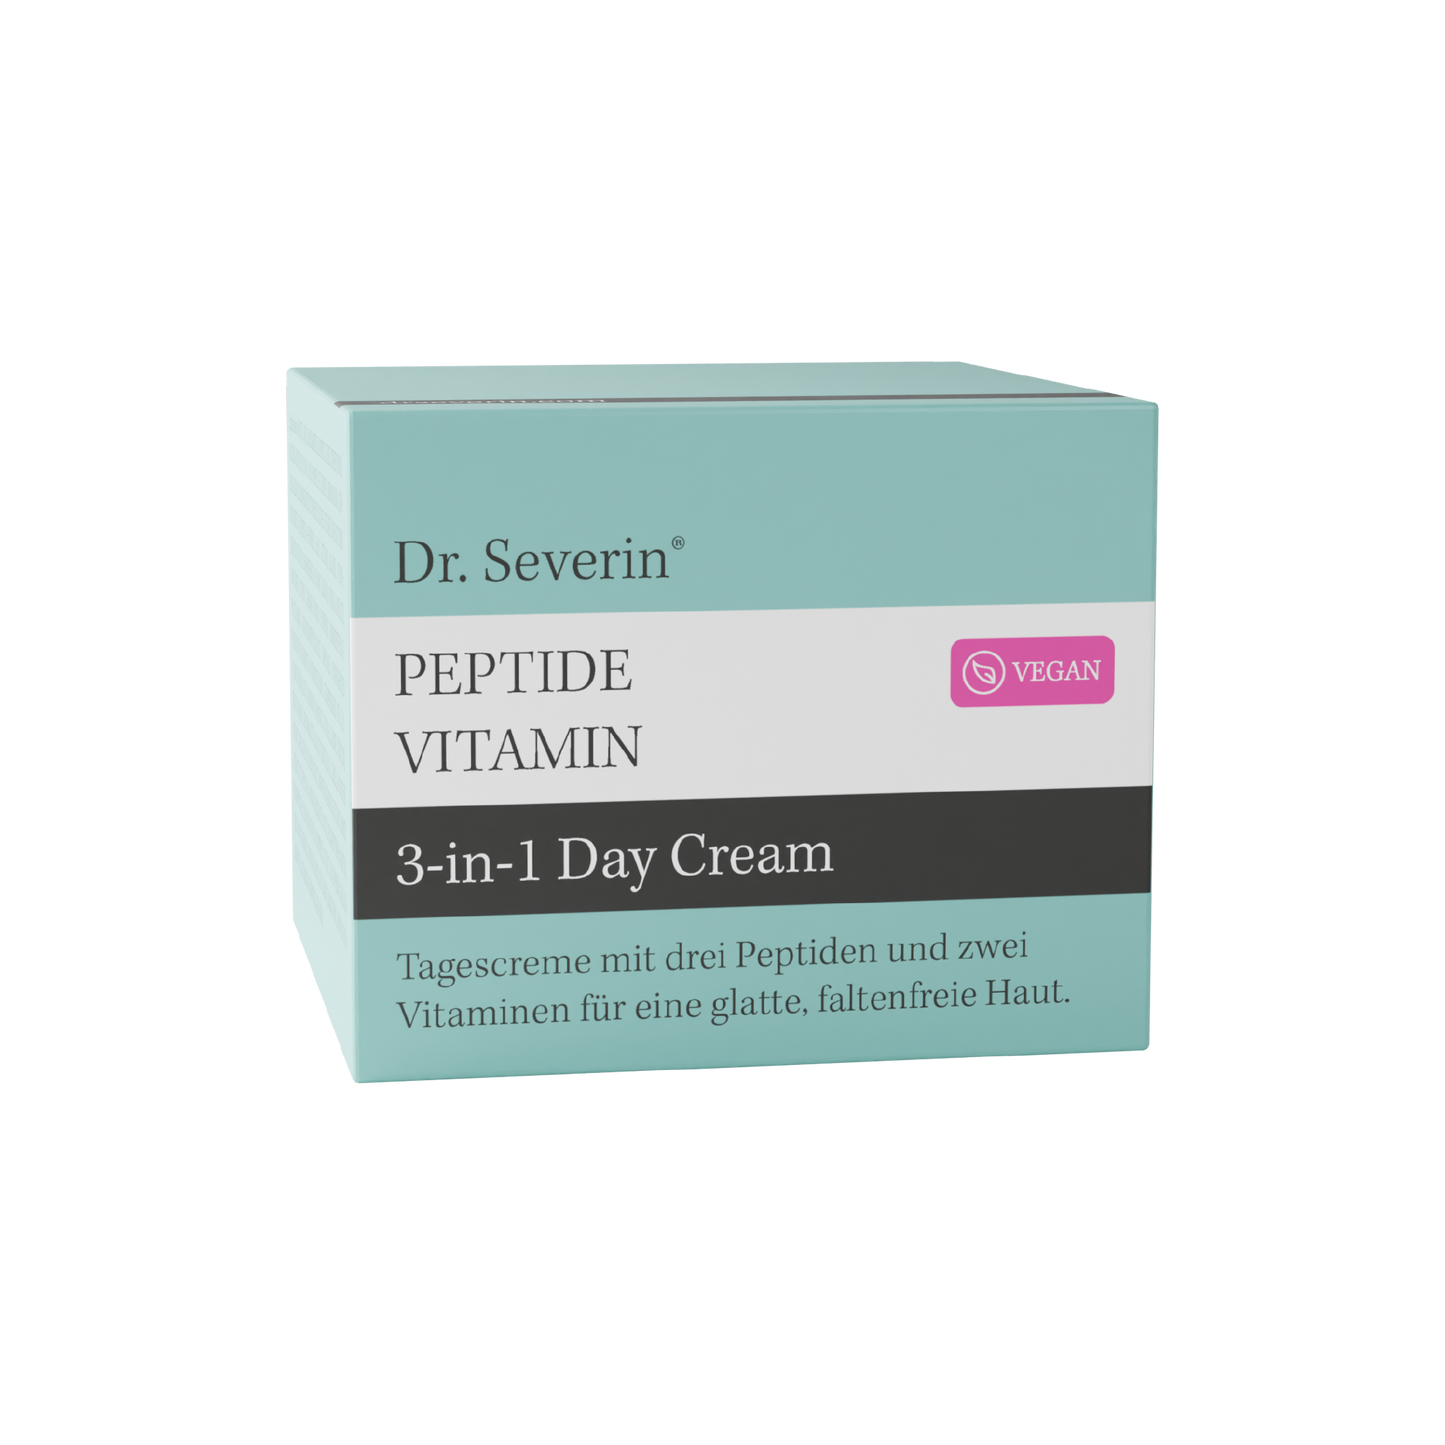 Peptide Vitamin 3-in-1 Day Cream | 50 ml